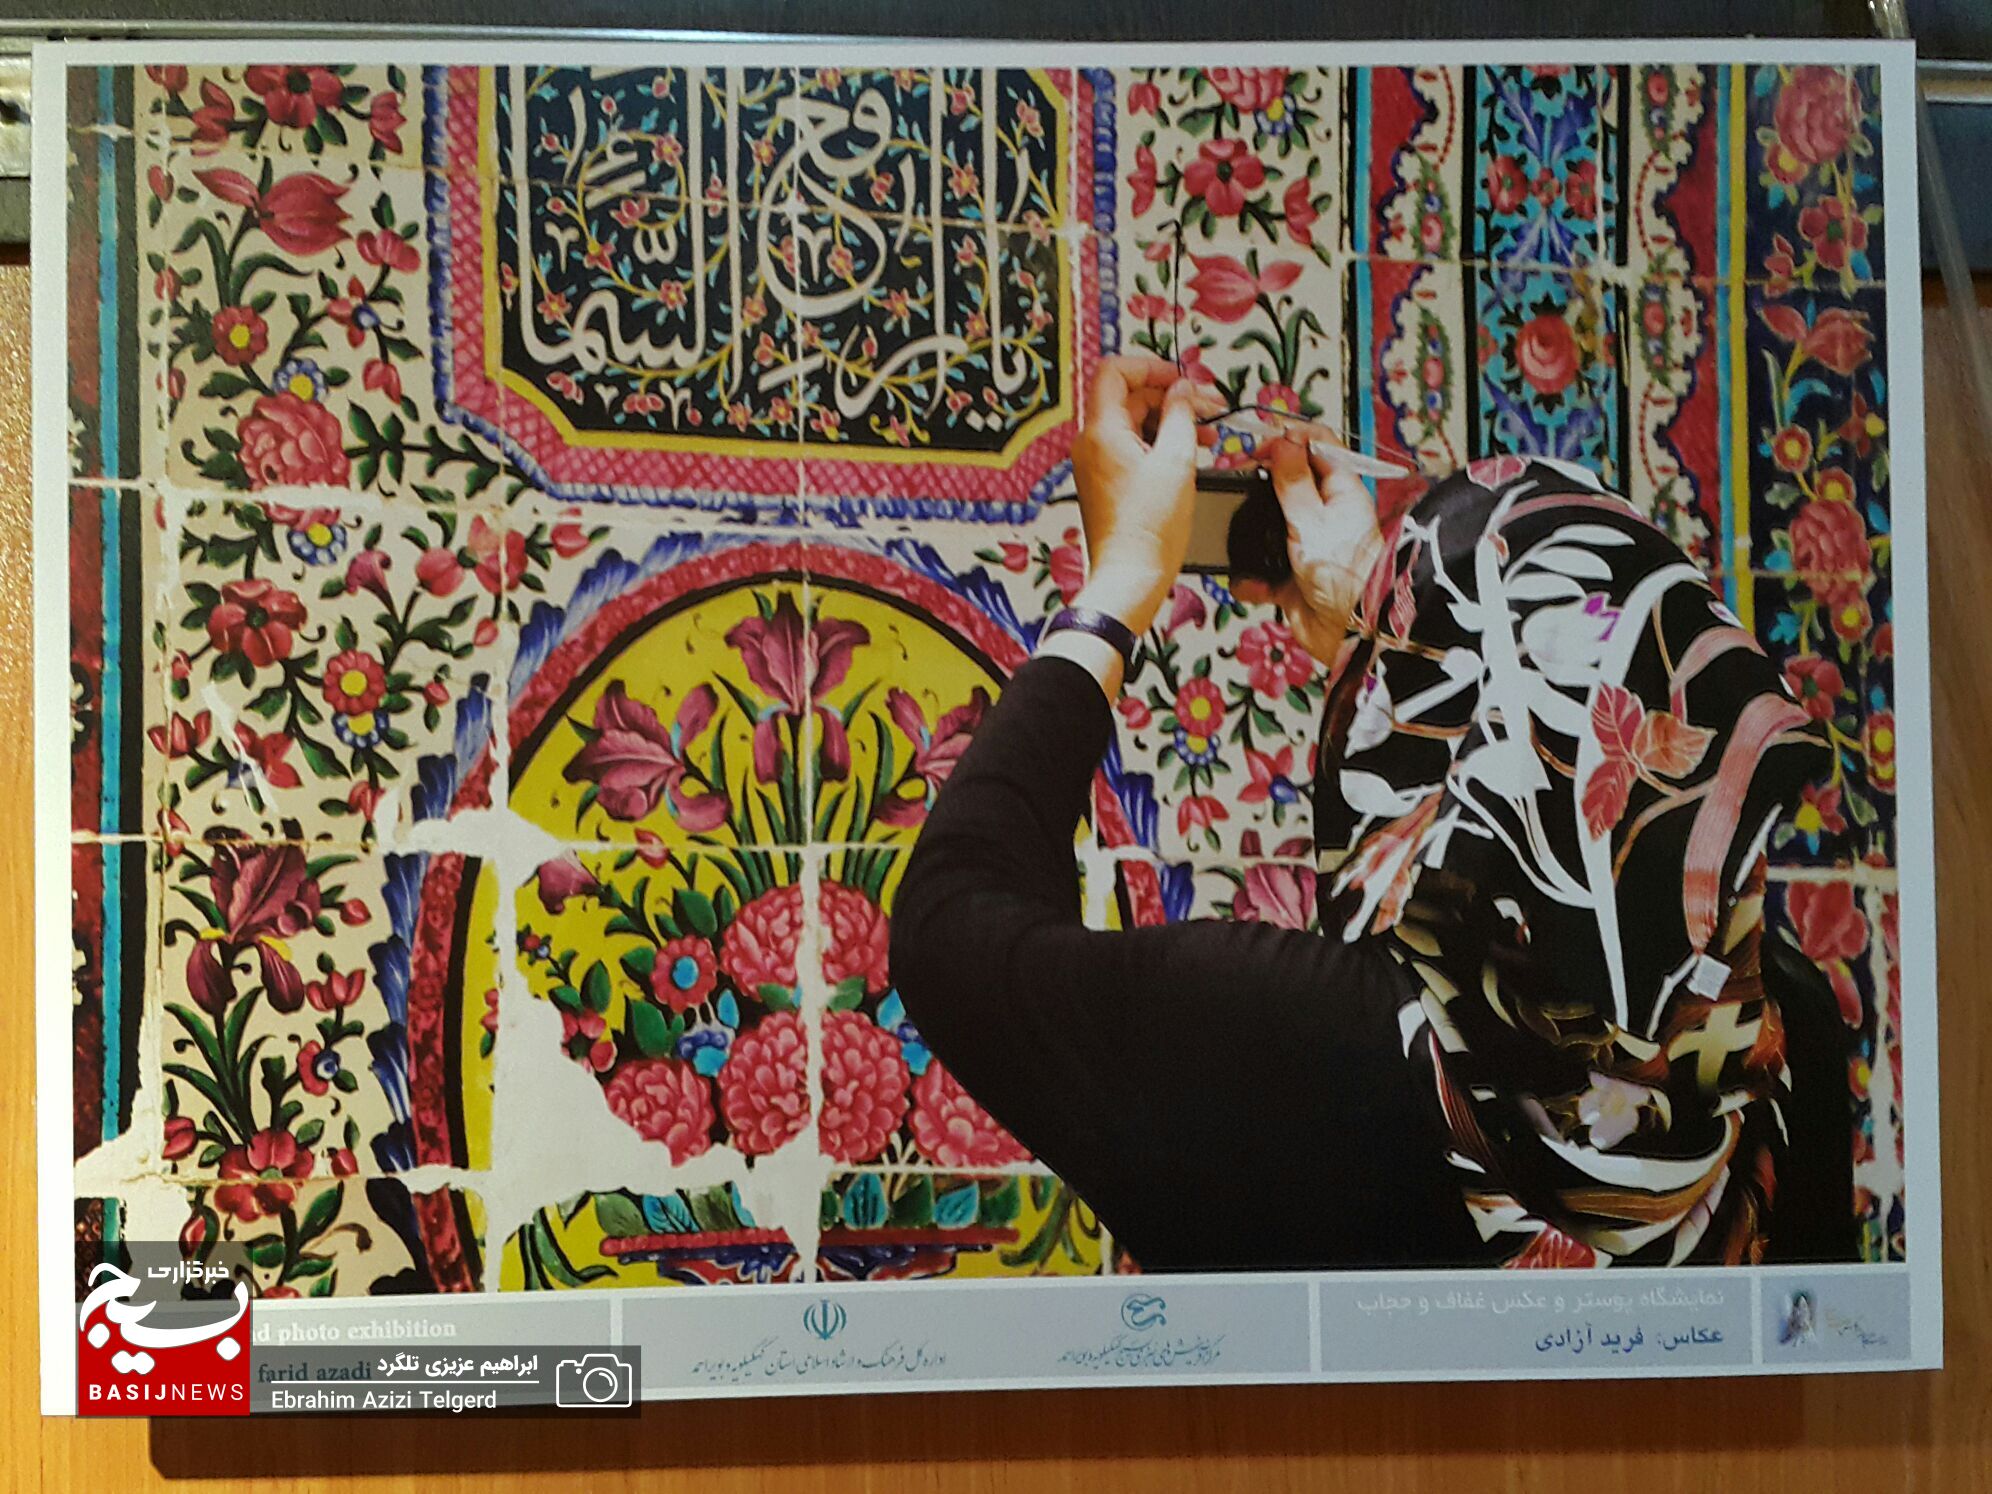 نمایشگاه پوستر و عکس عفاف و حجاب در یاسوج افتتاح شد